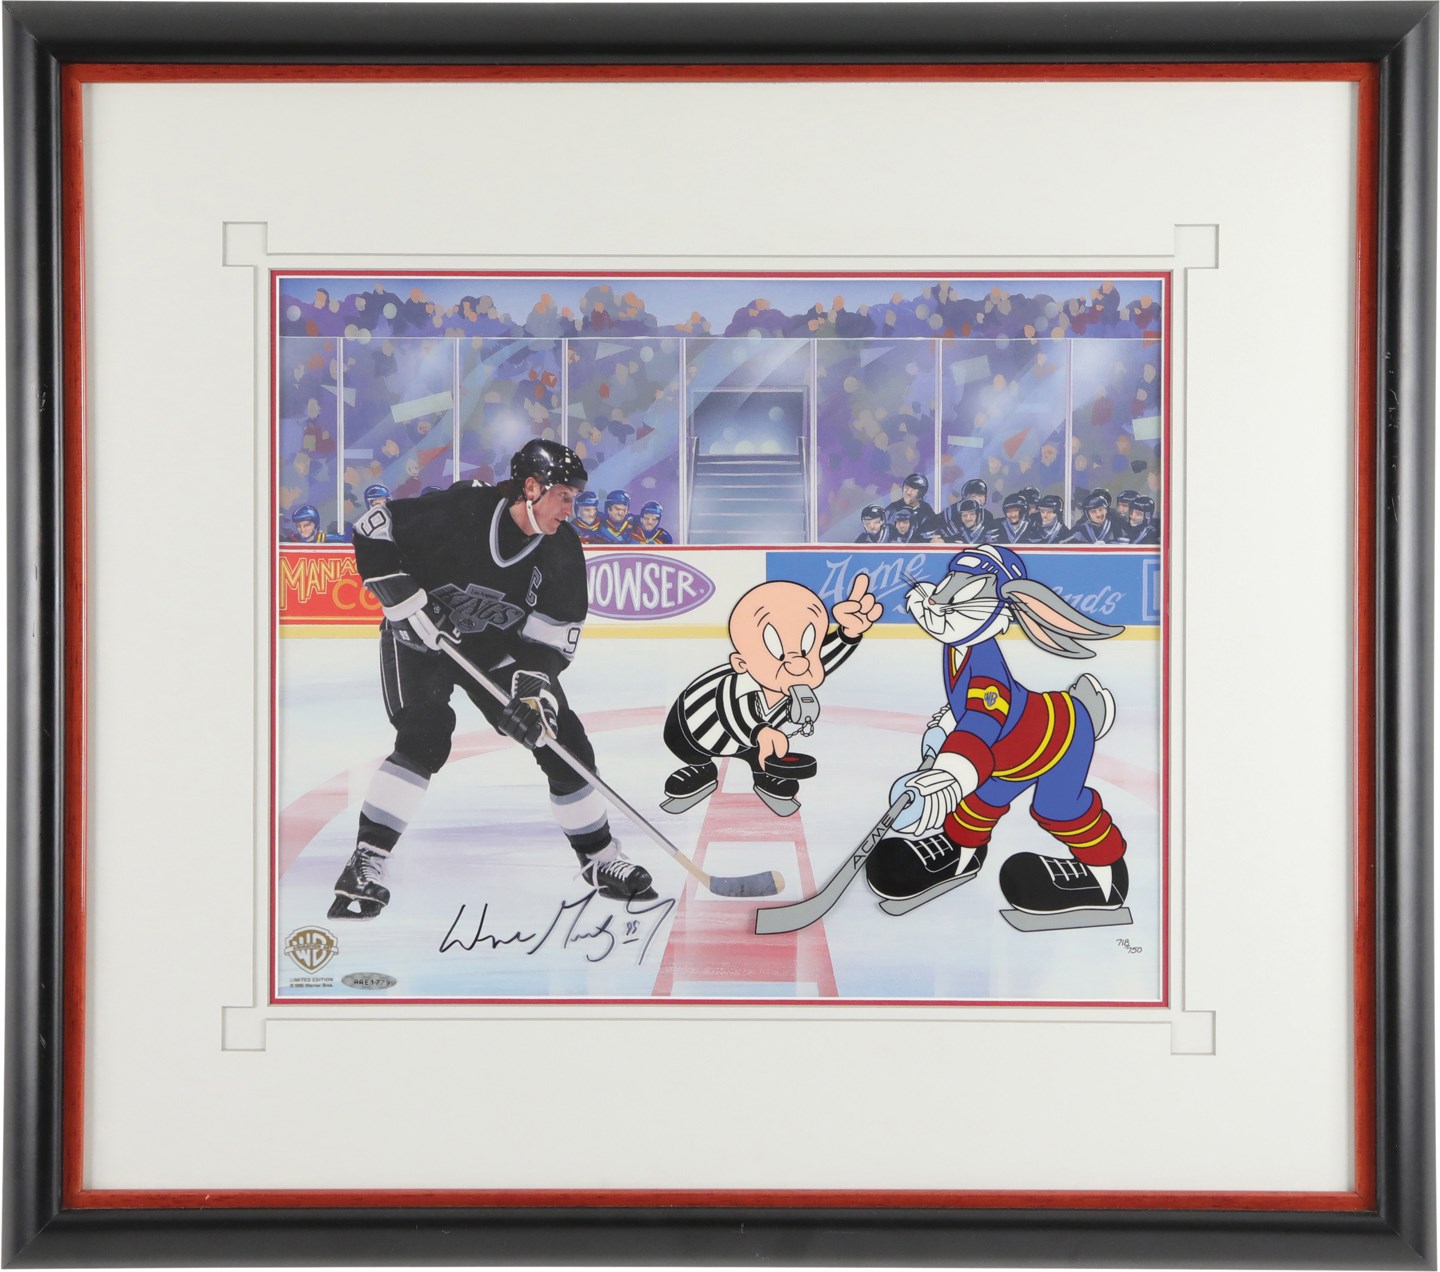 1995 Wayne Gretzky Signed Limited-Edition Warner Bros. Animation Cel (Upper Deck)